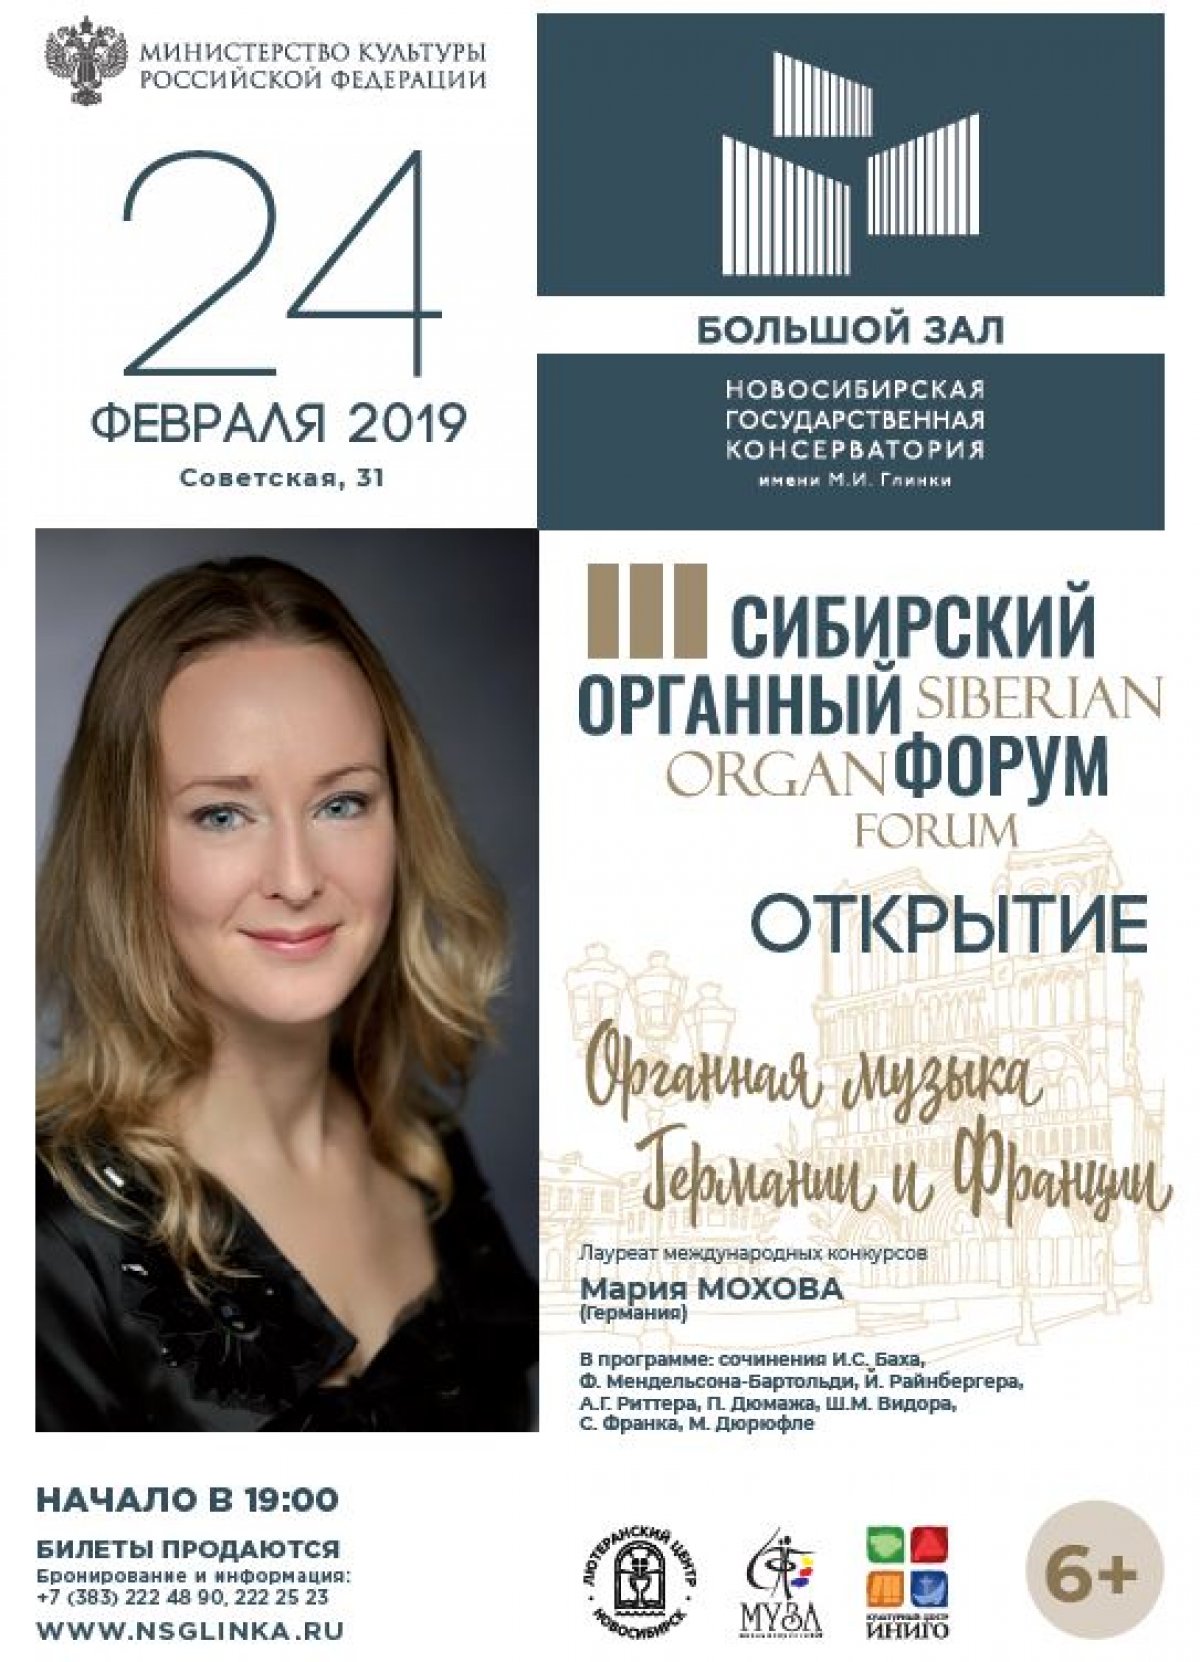 Сибирский органный форум — грандиозное событие в сибирской музыкальной жизни